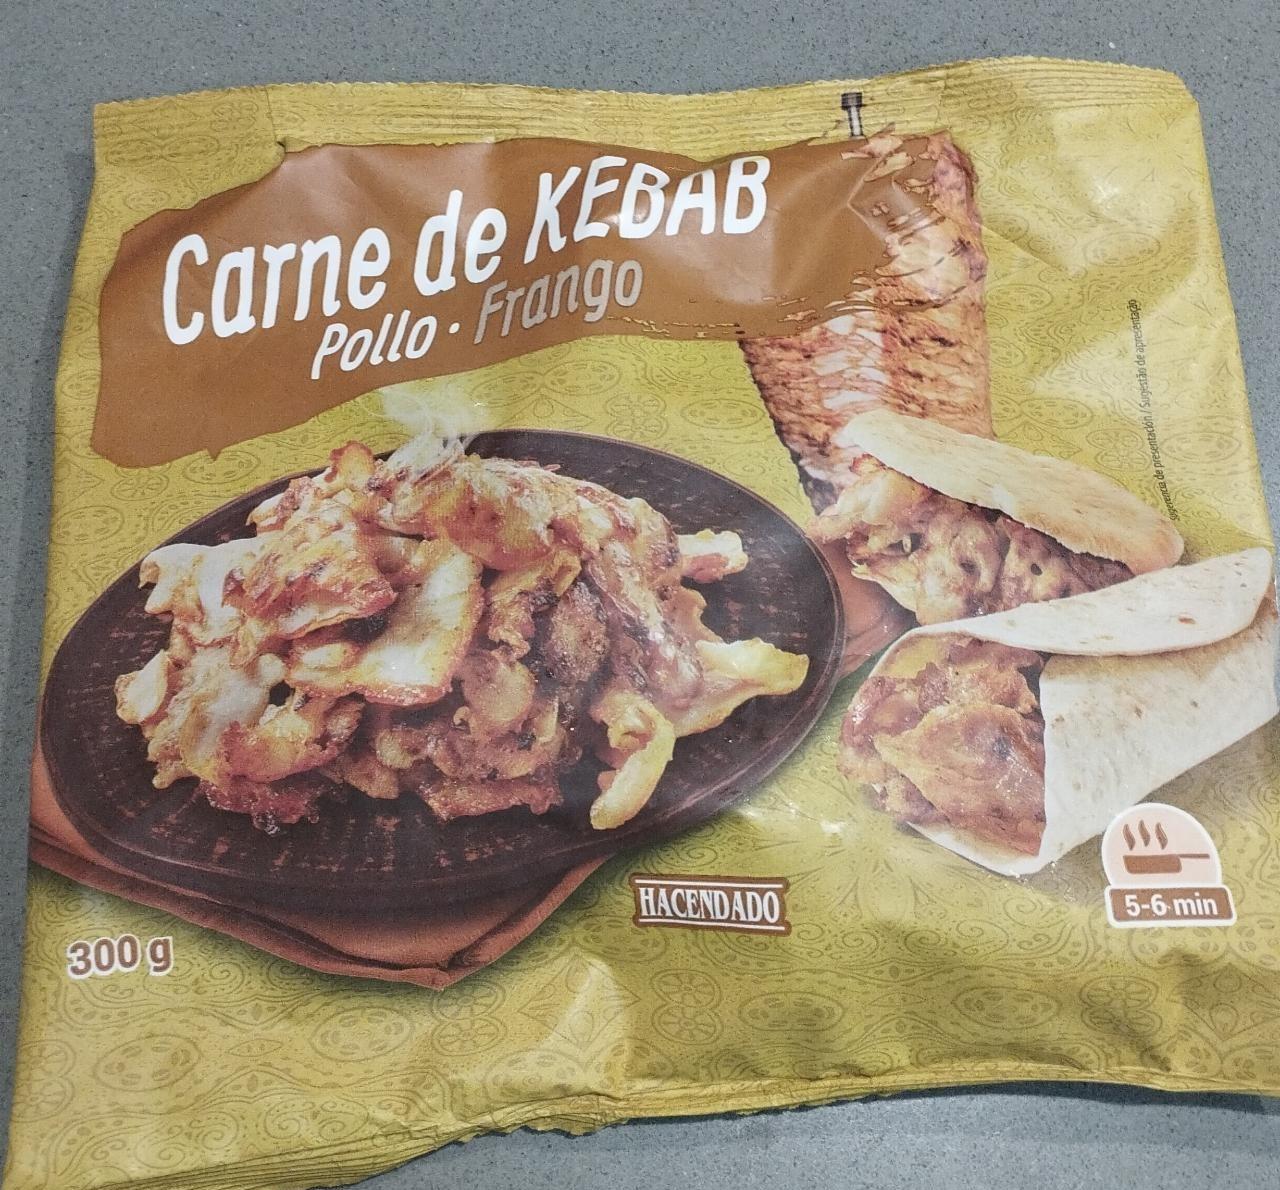 Fotografie - Carne de Kebab Pollo Hacendado